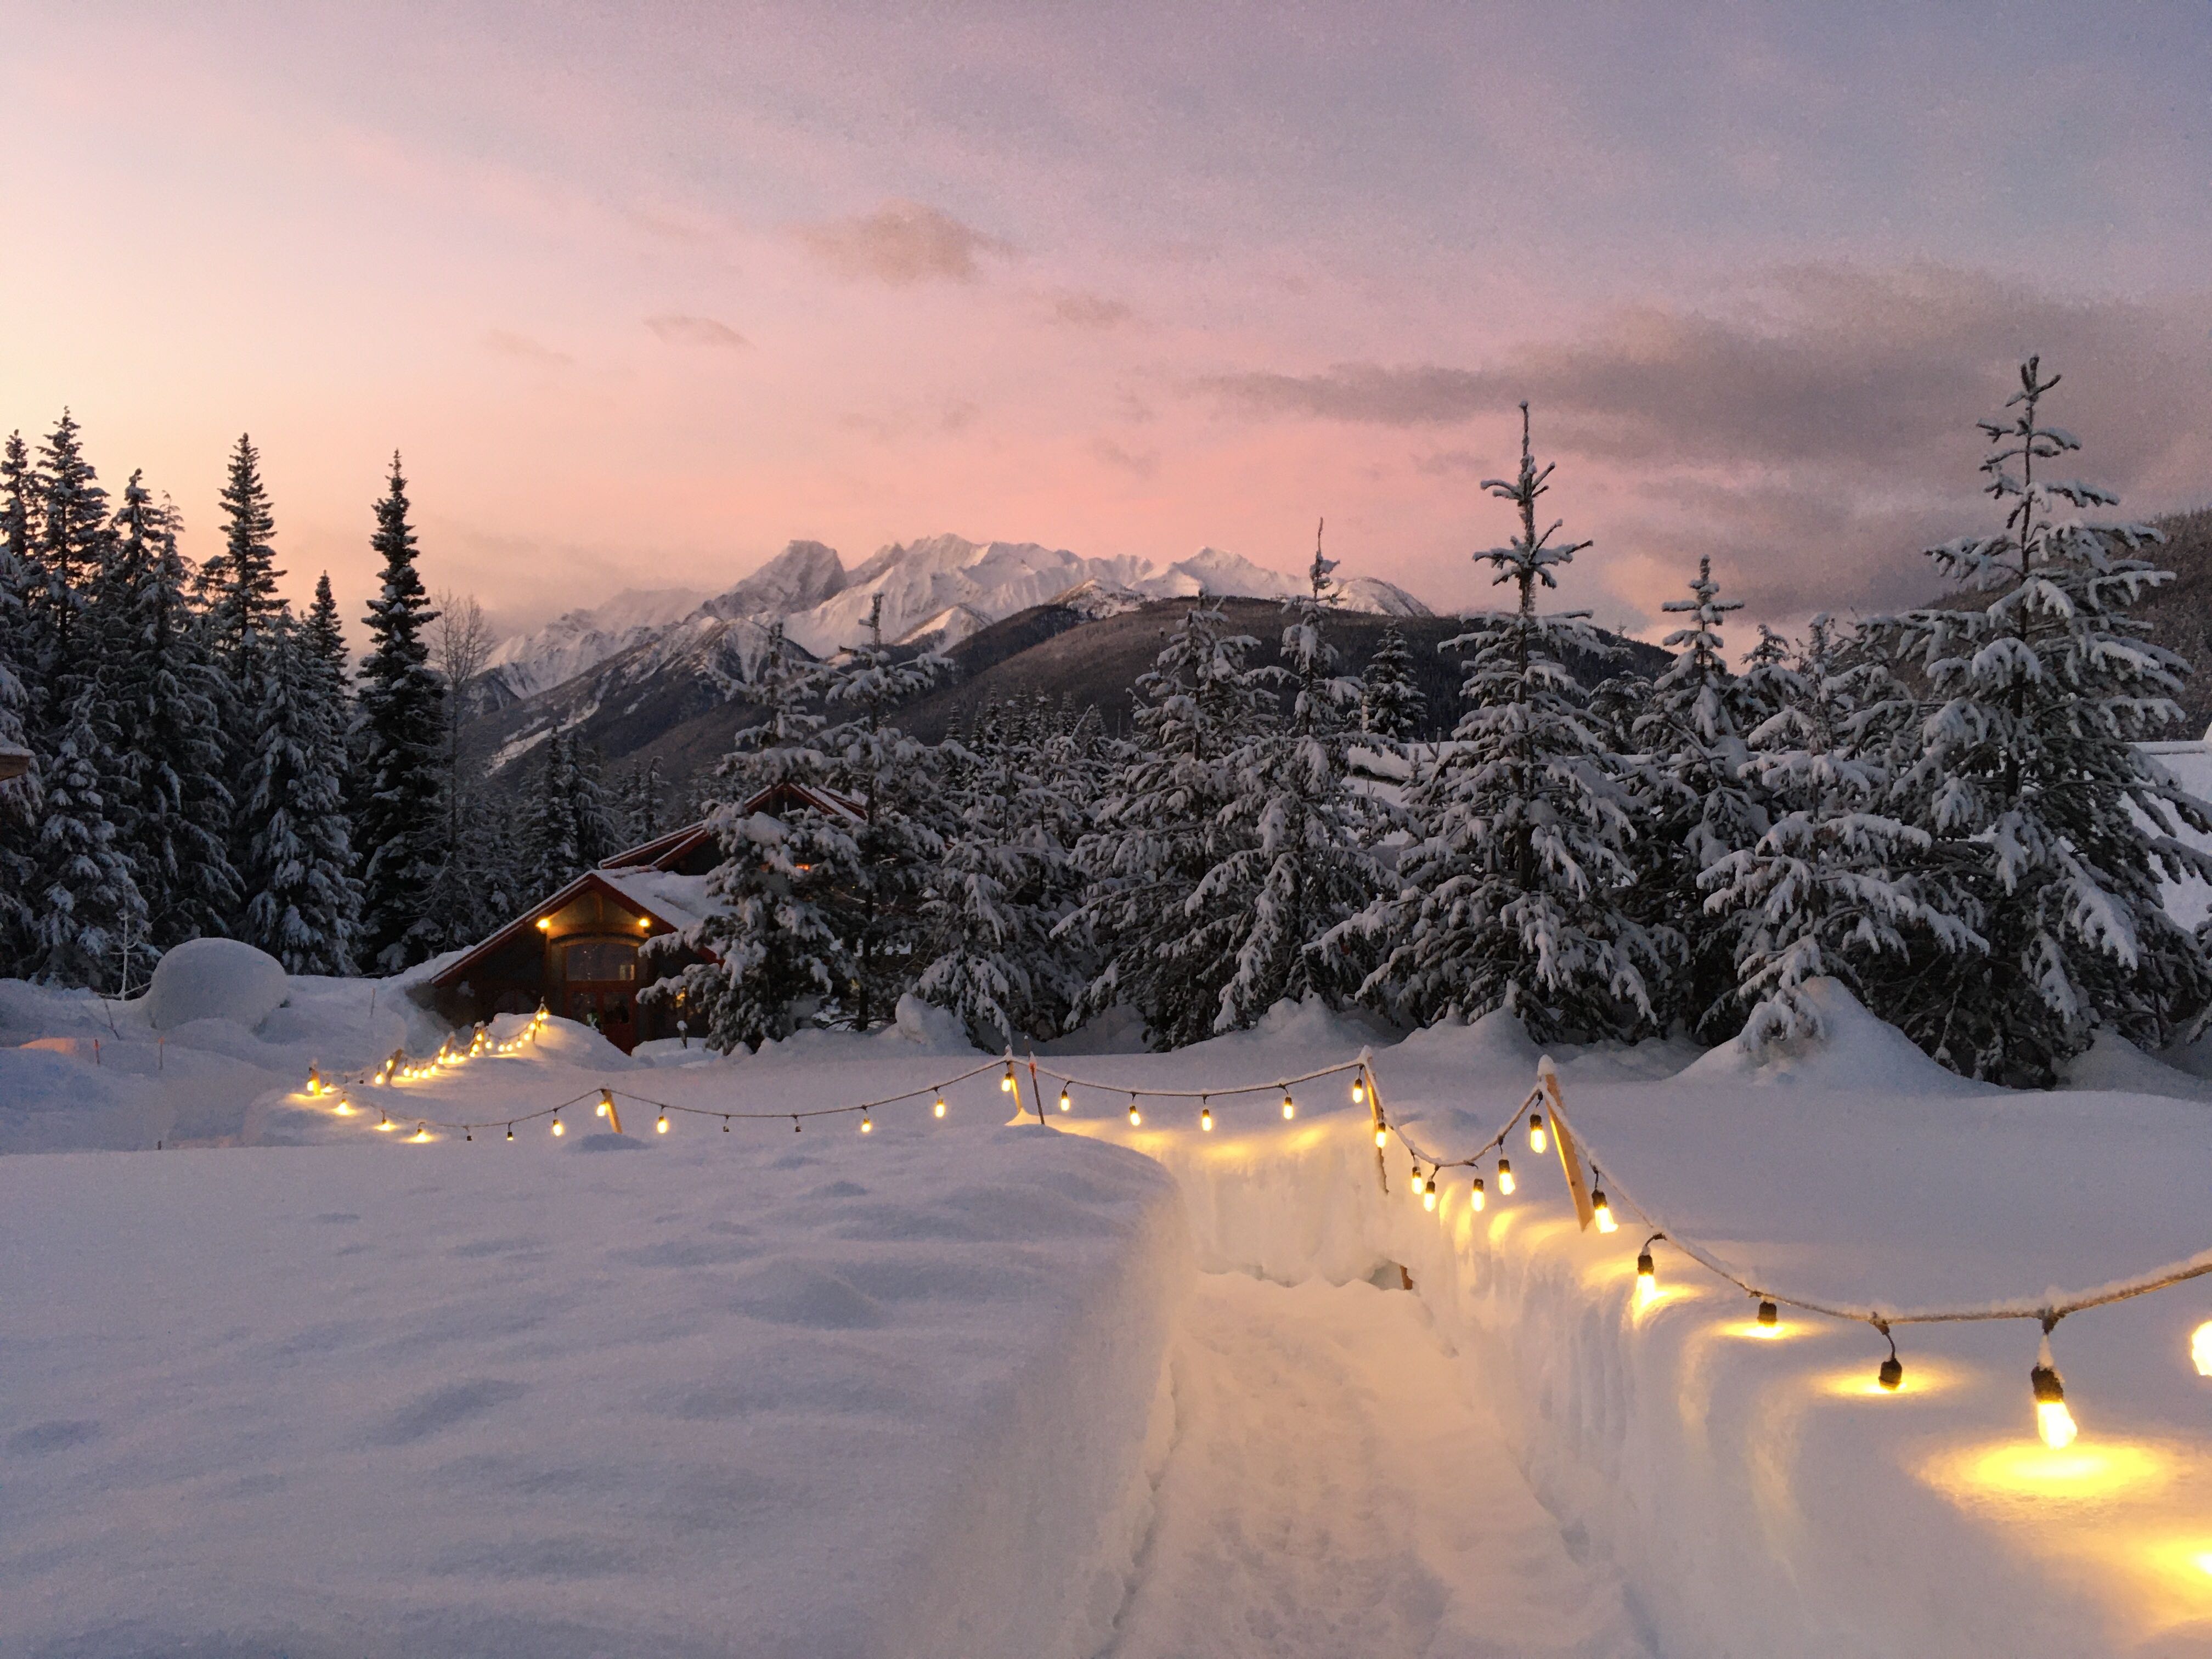 Winter cabin setting in BC Canada